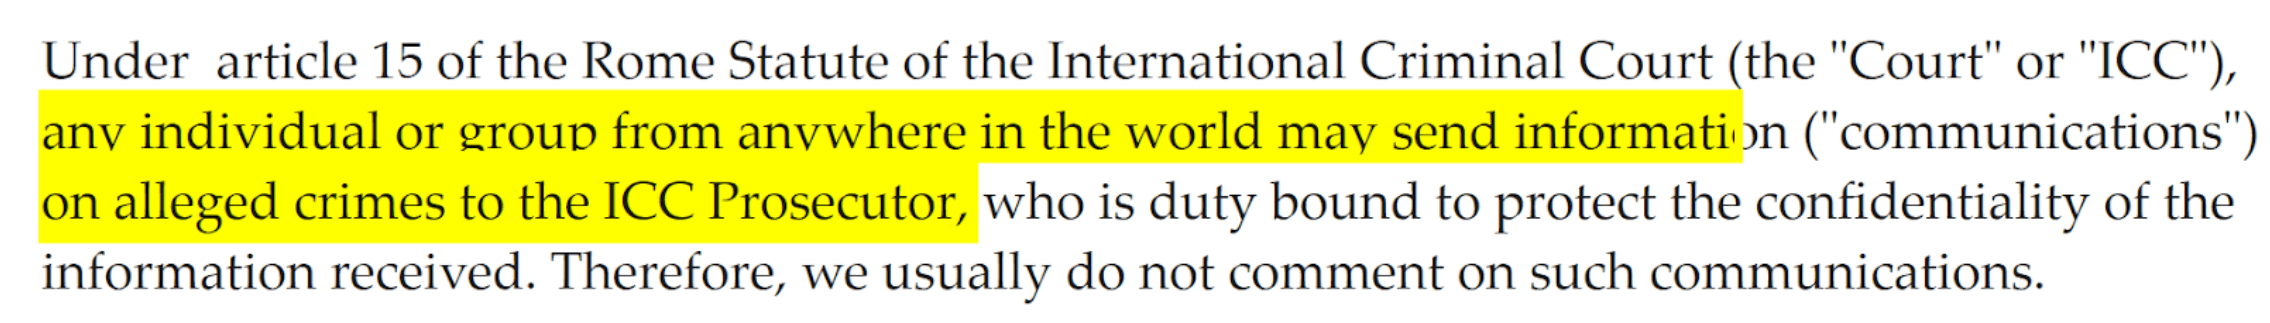 Auszug aus der Mail des Pressebüros des Internationalen Strafgerichtshofs 